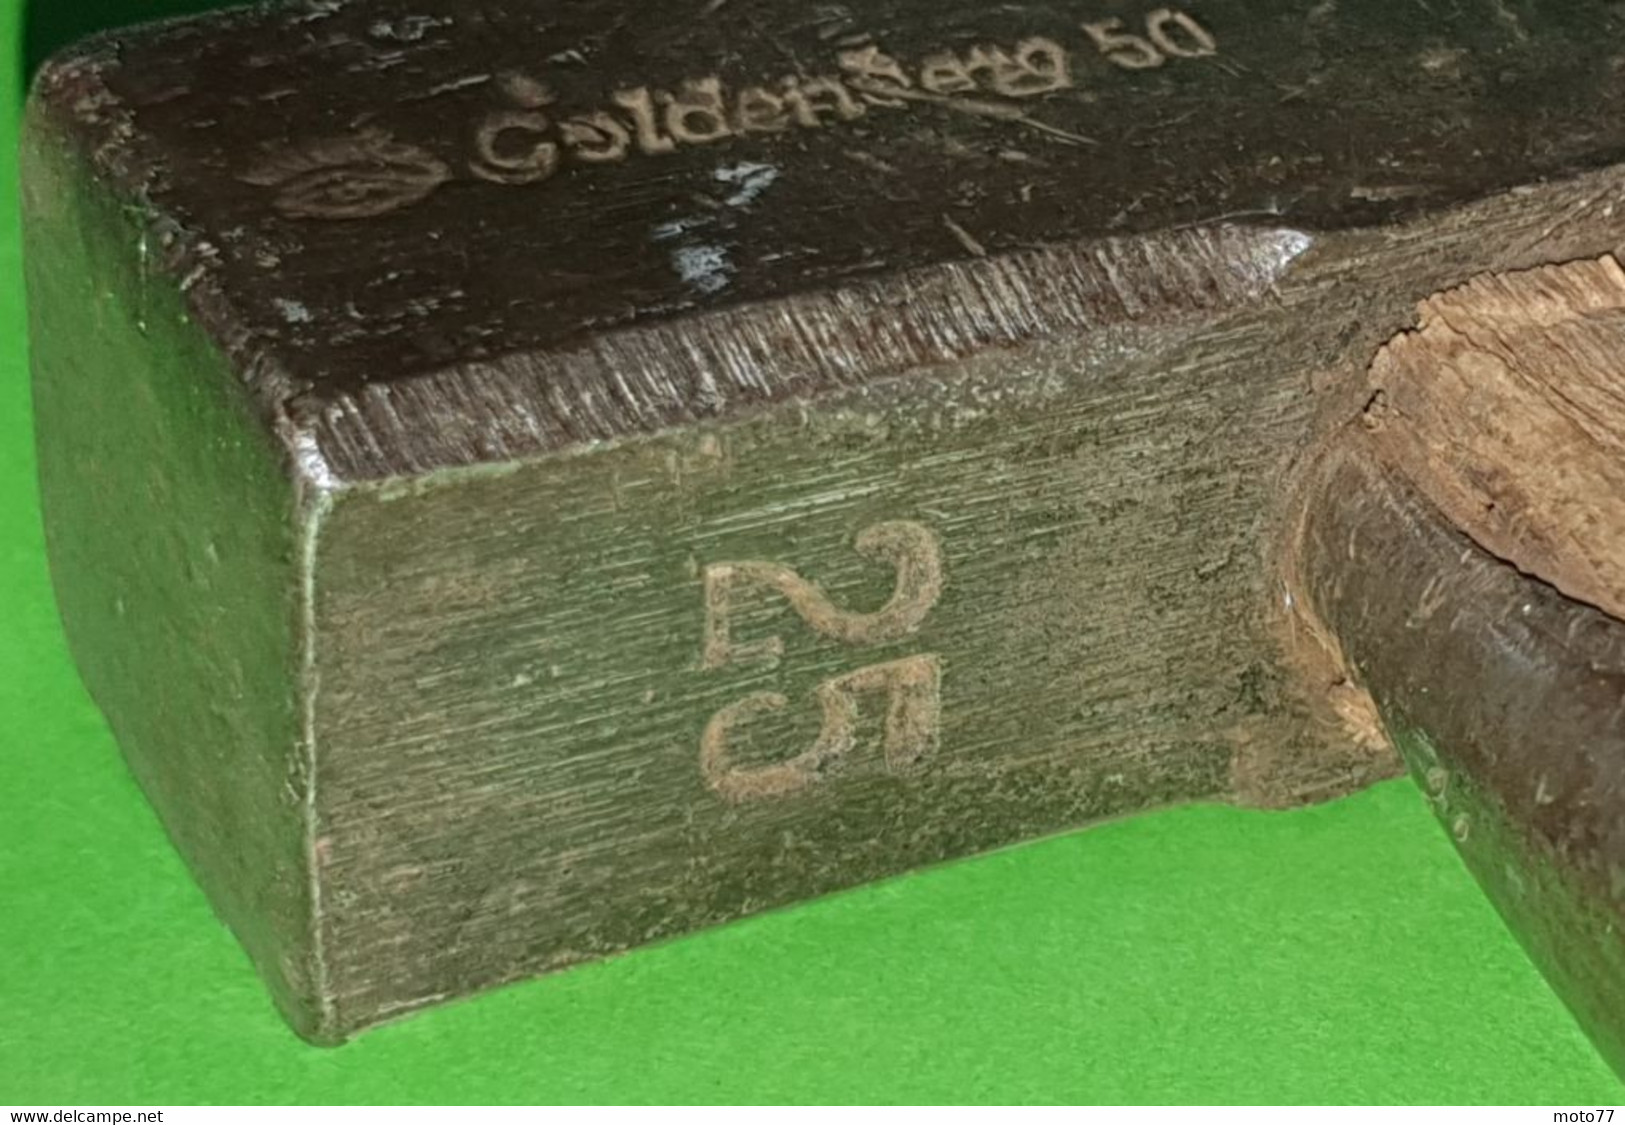 Ancien OUTIL spécial - MARTEAU arrache clous 25 Goldenberg 50 - acier et bois - "Laissé dans son jus"- vers 1940 1950